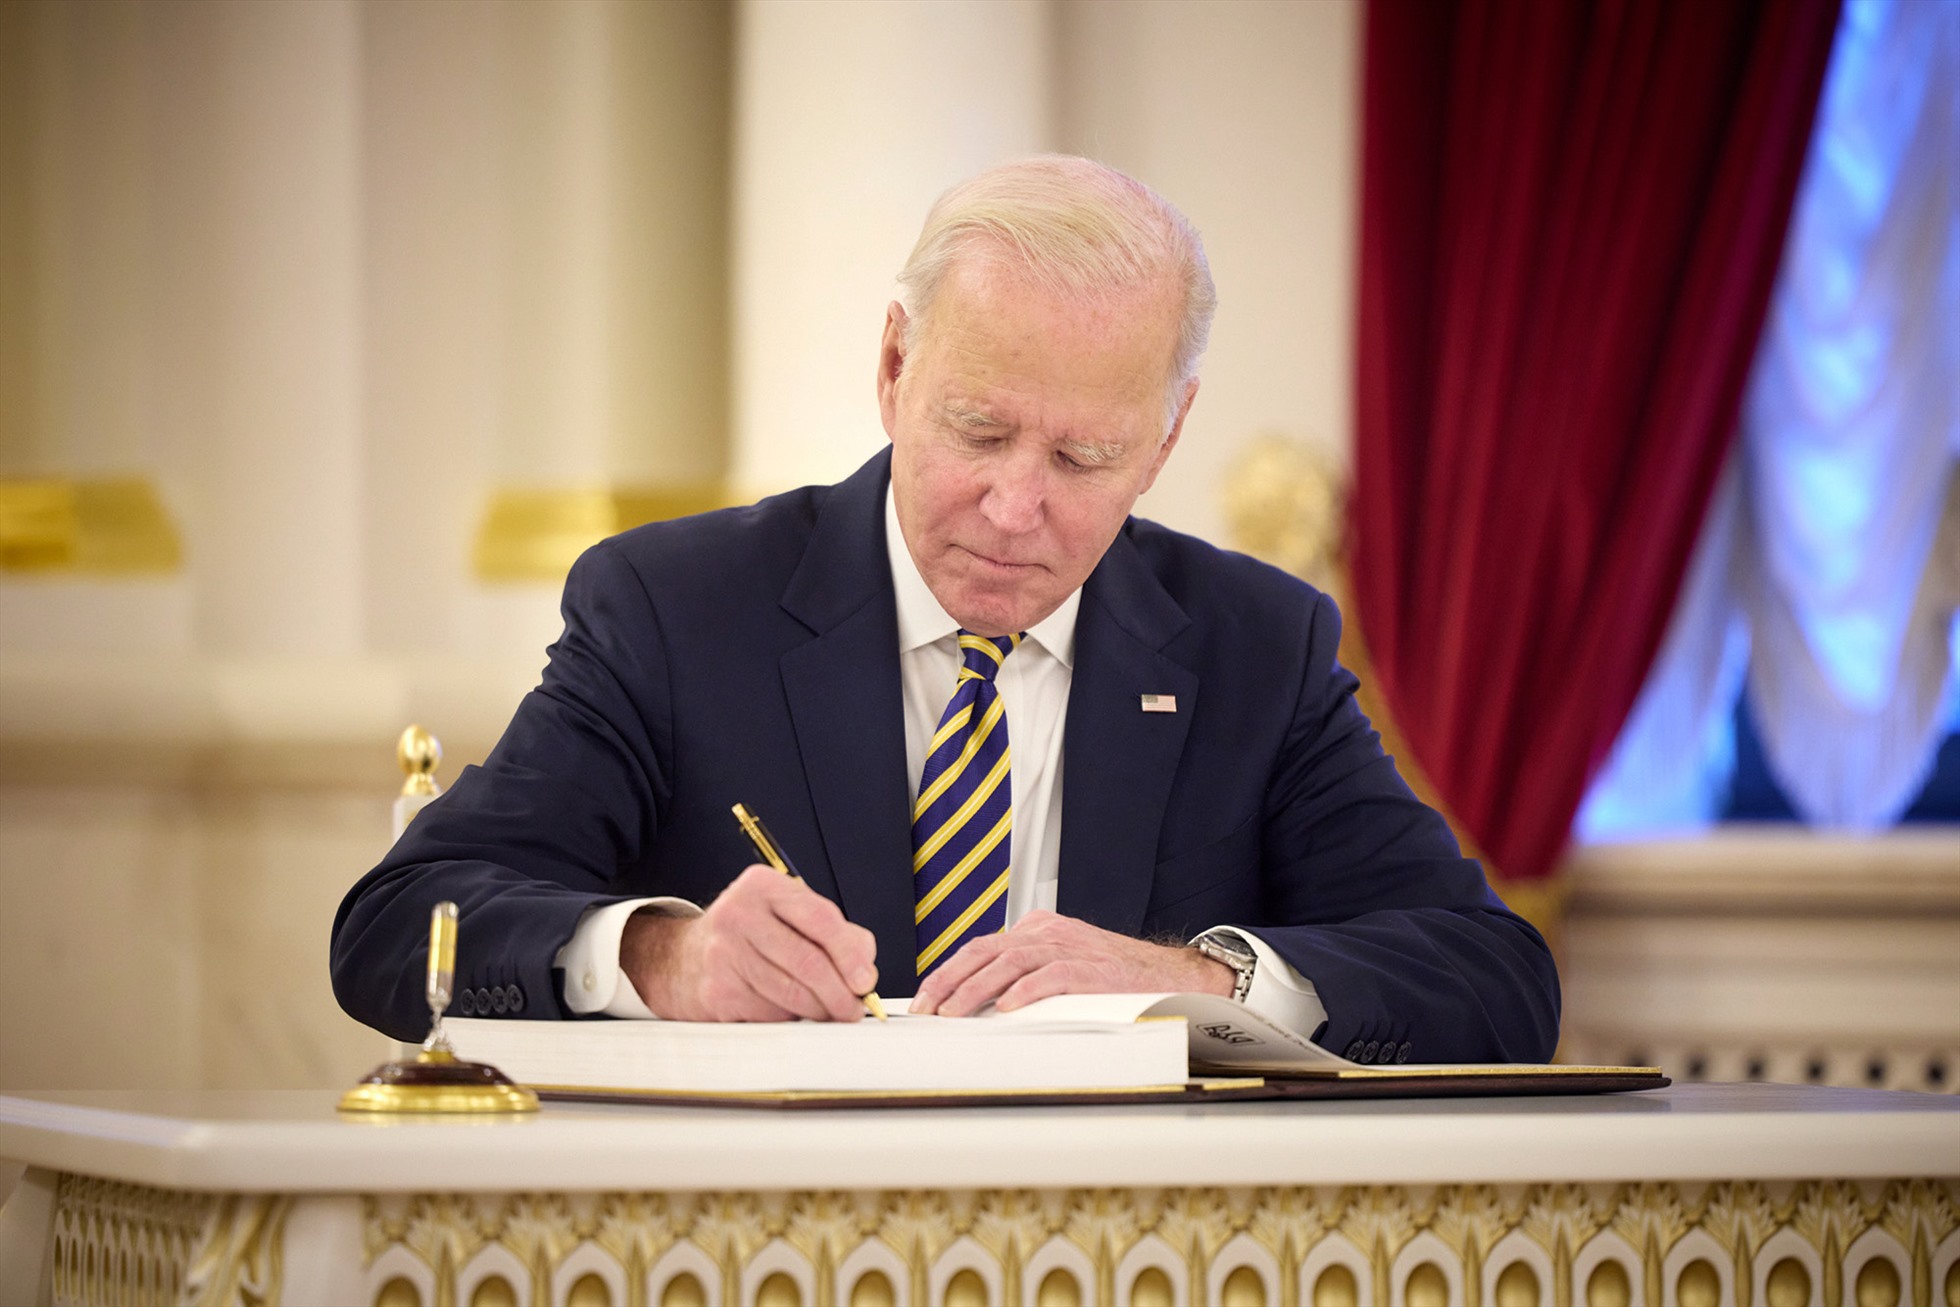 Tổng thống Joe Biden ghi sổ lưu niệm trong cuộc gặp với Tổng thống Ukraina Volodymyr Zelensky tại dinh tổng thống Ukraina, ngày 20.2.2023. Ảnh: Văn phòng Tổng thống Ukraina